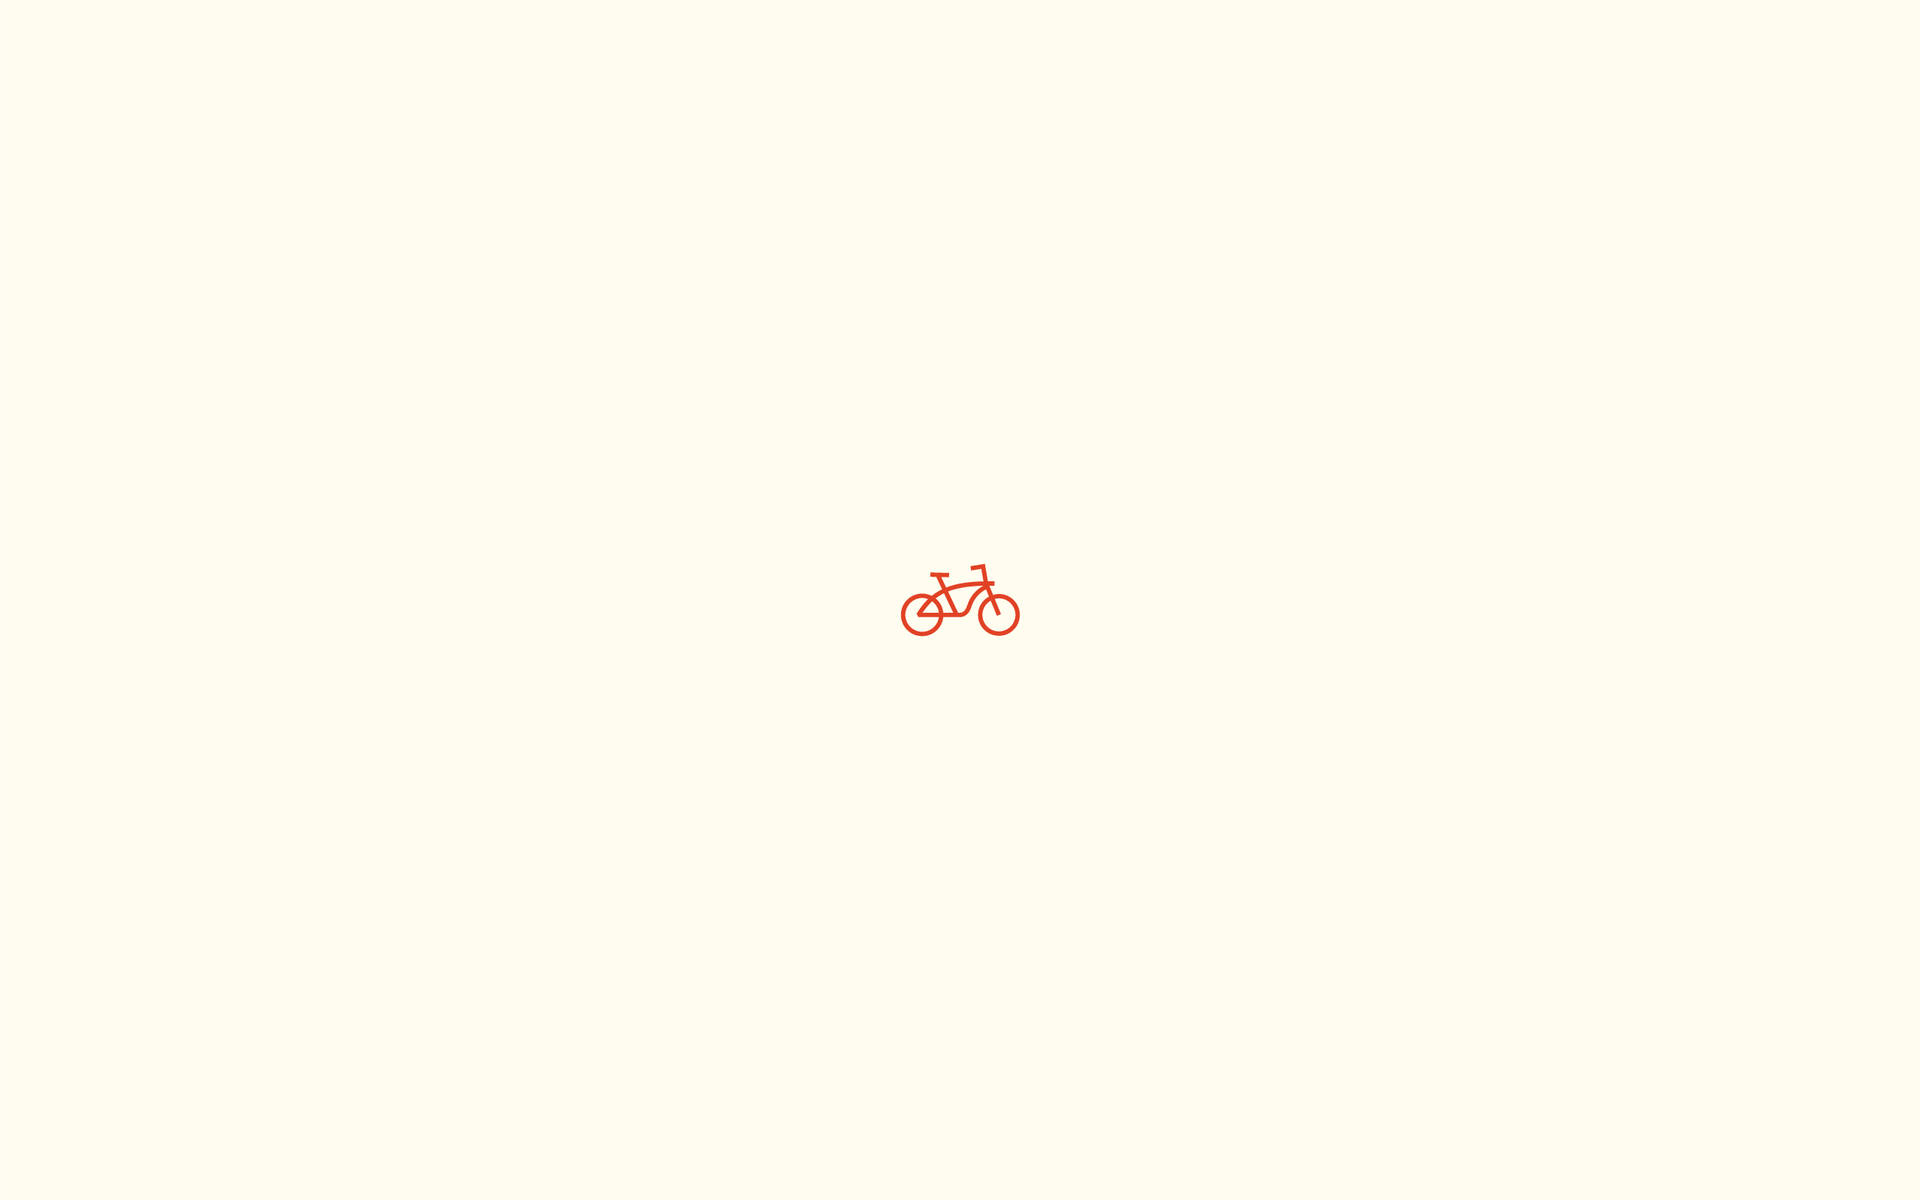 Bicicletapequeña De Color Liso Fondo de pantalla